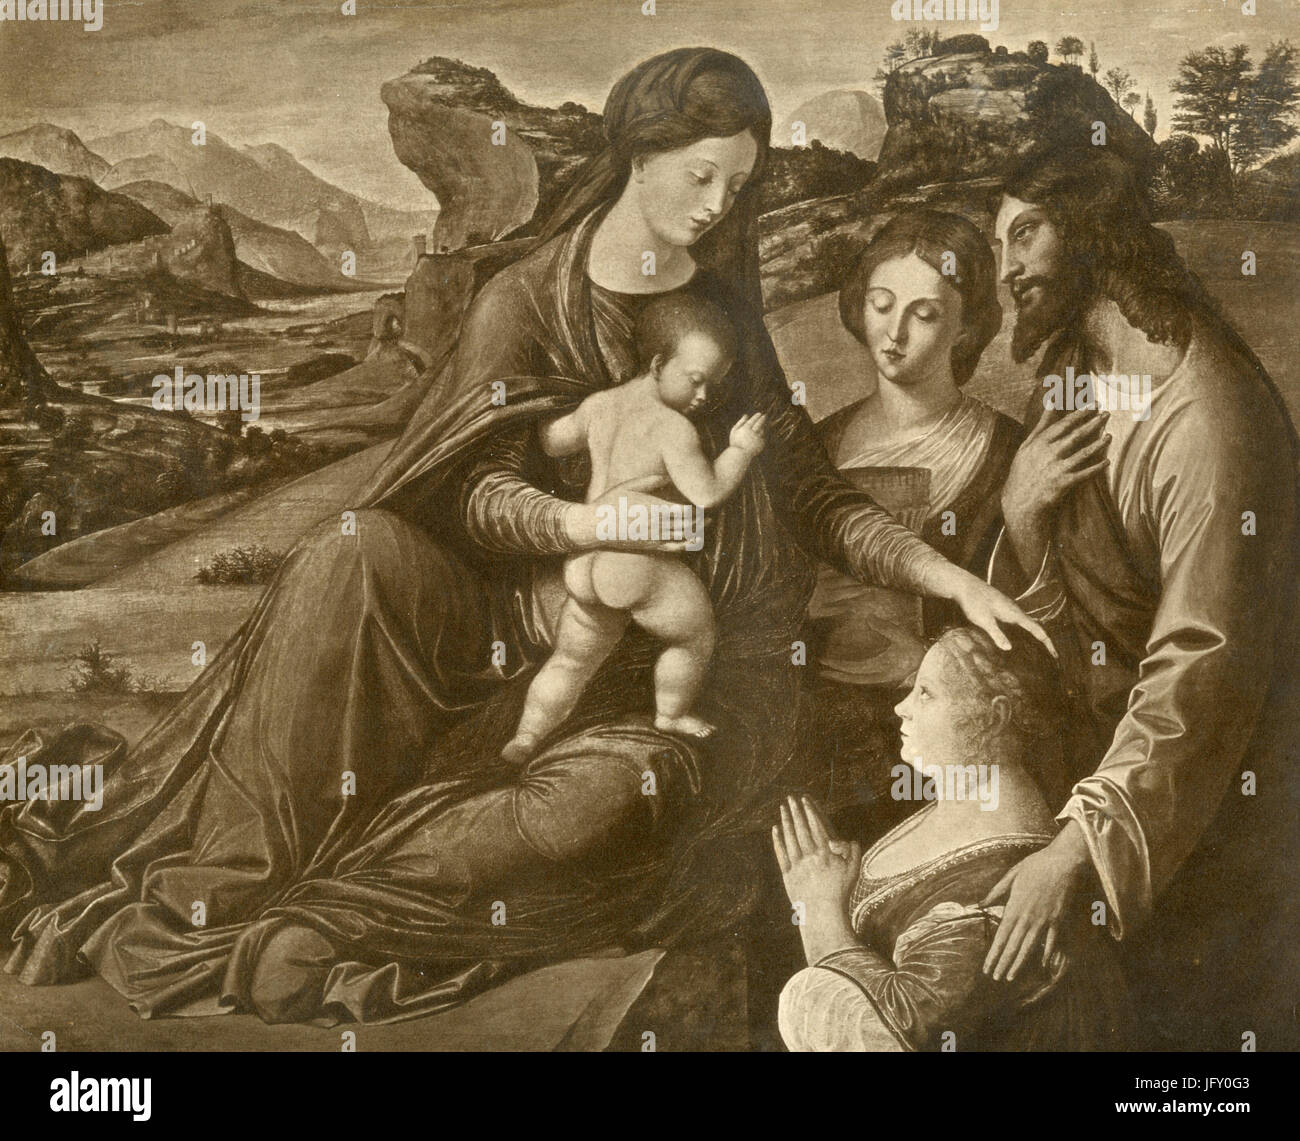 La Vierge et l'enfant avec les saints, la peinture de Jacopo de Barbari, Munich, Allemagne Banque D'Images